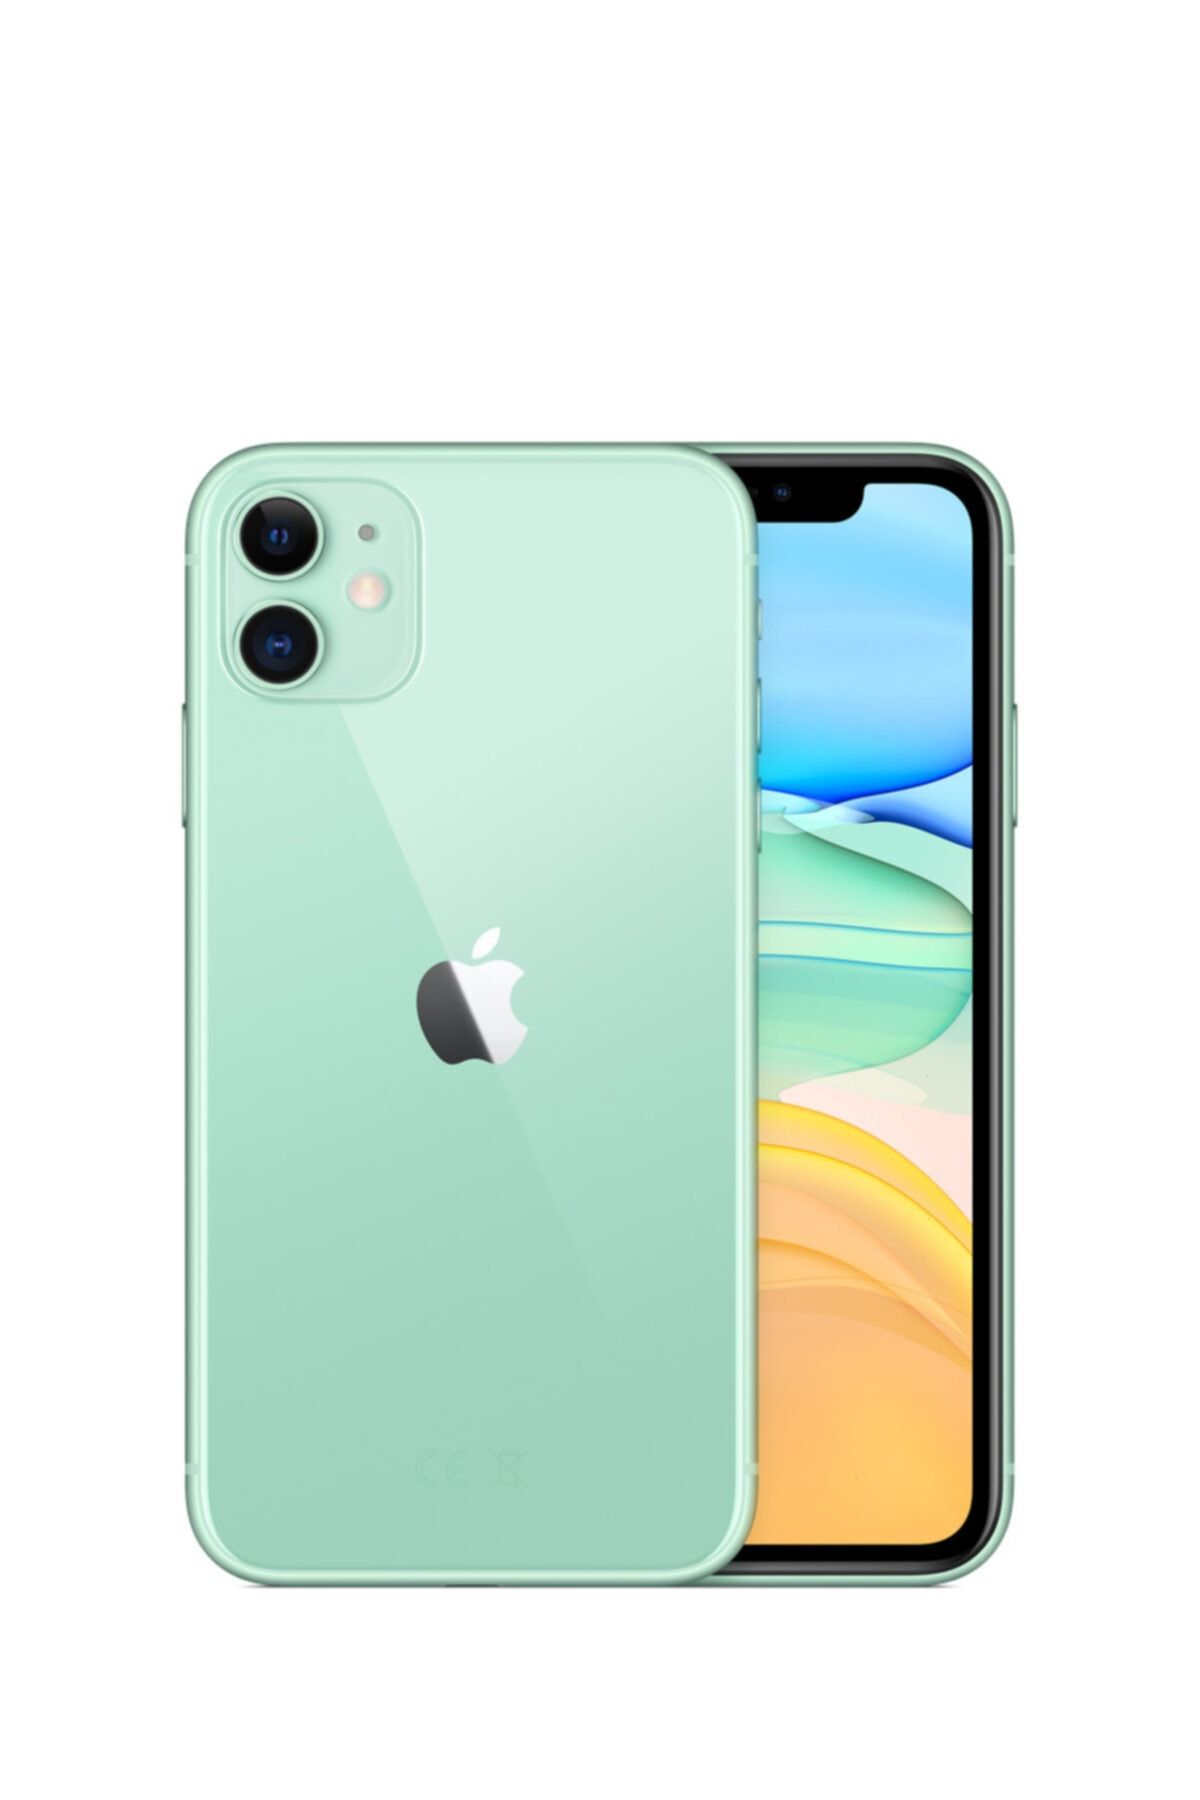 Apple iPhone 11 256GB Yeşil Cep Telefonu (Apple Türkiye Garantili) Aksesuarsız Kutu